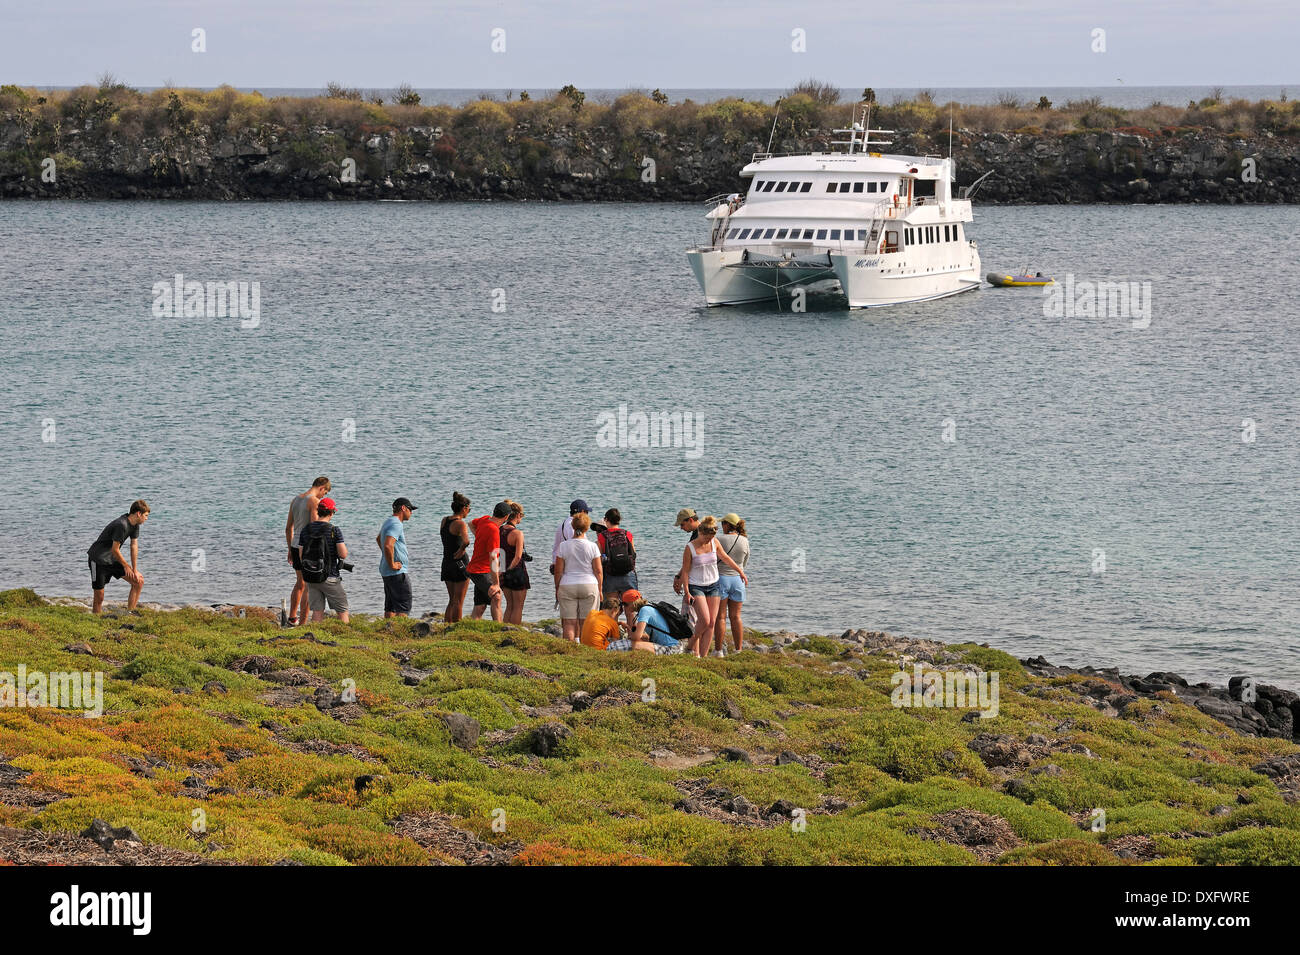 Group of tourists, Plaza Sur Island, Galapagos Islands, Ecuador Stock Photo